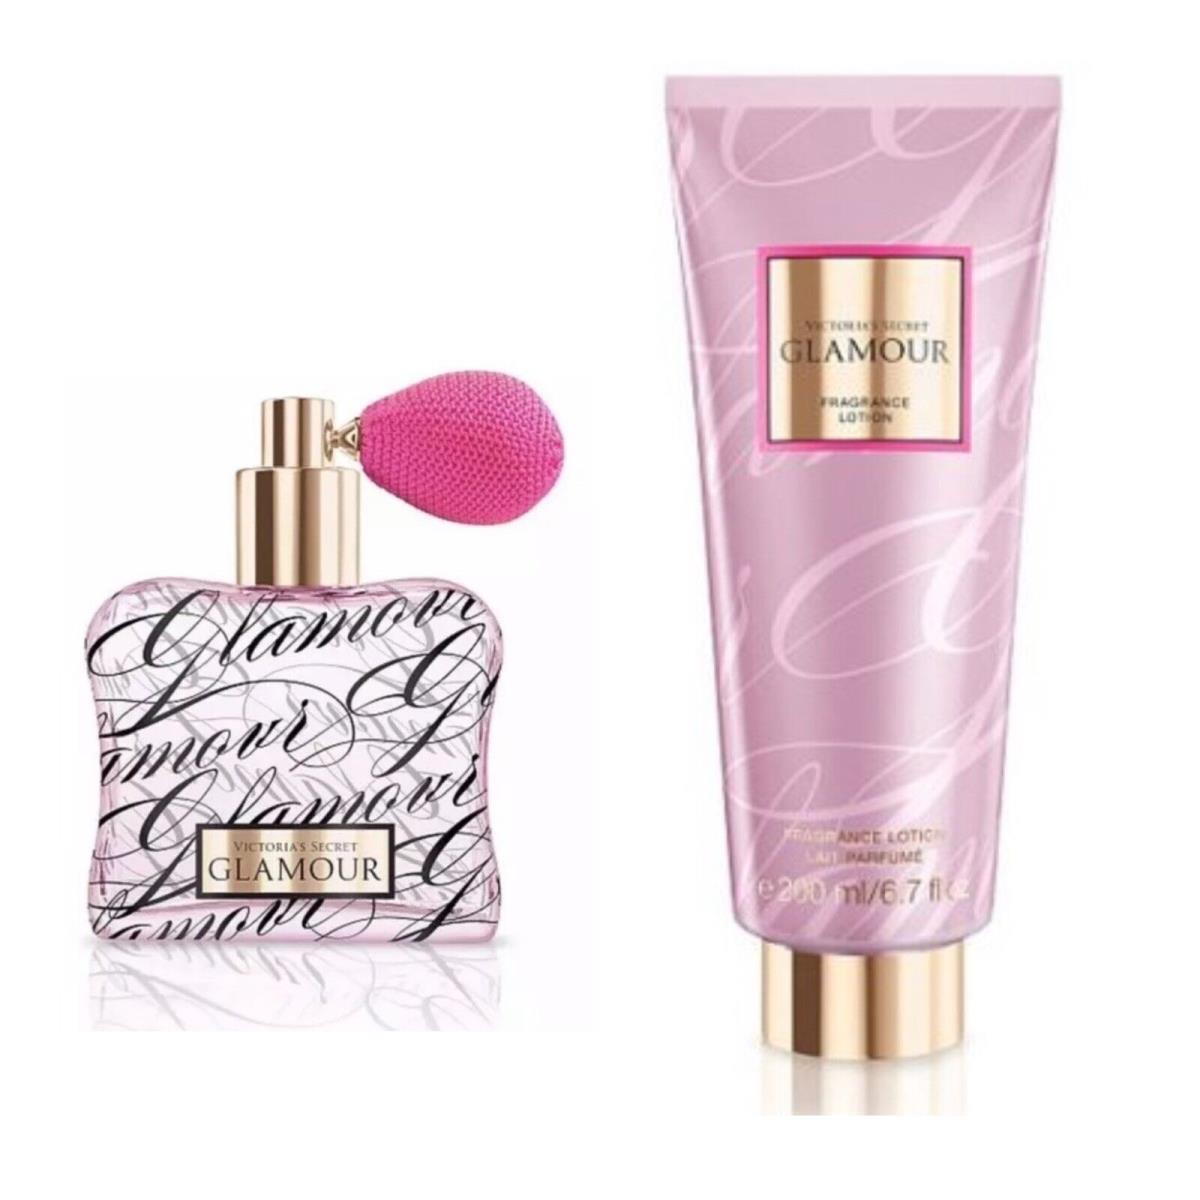 Victoria`s Secret Glamour Eau de Parfum 1.7 Fl.oz. and Fragrance Lotion